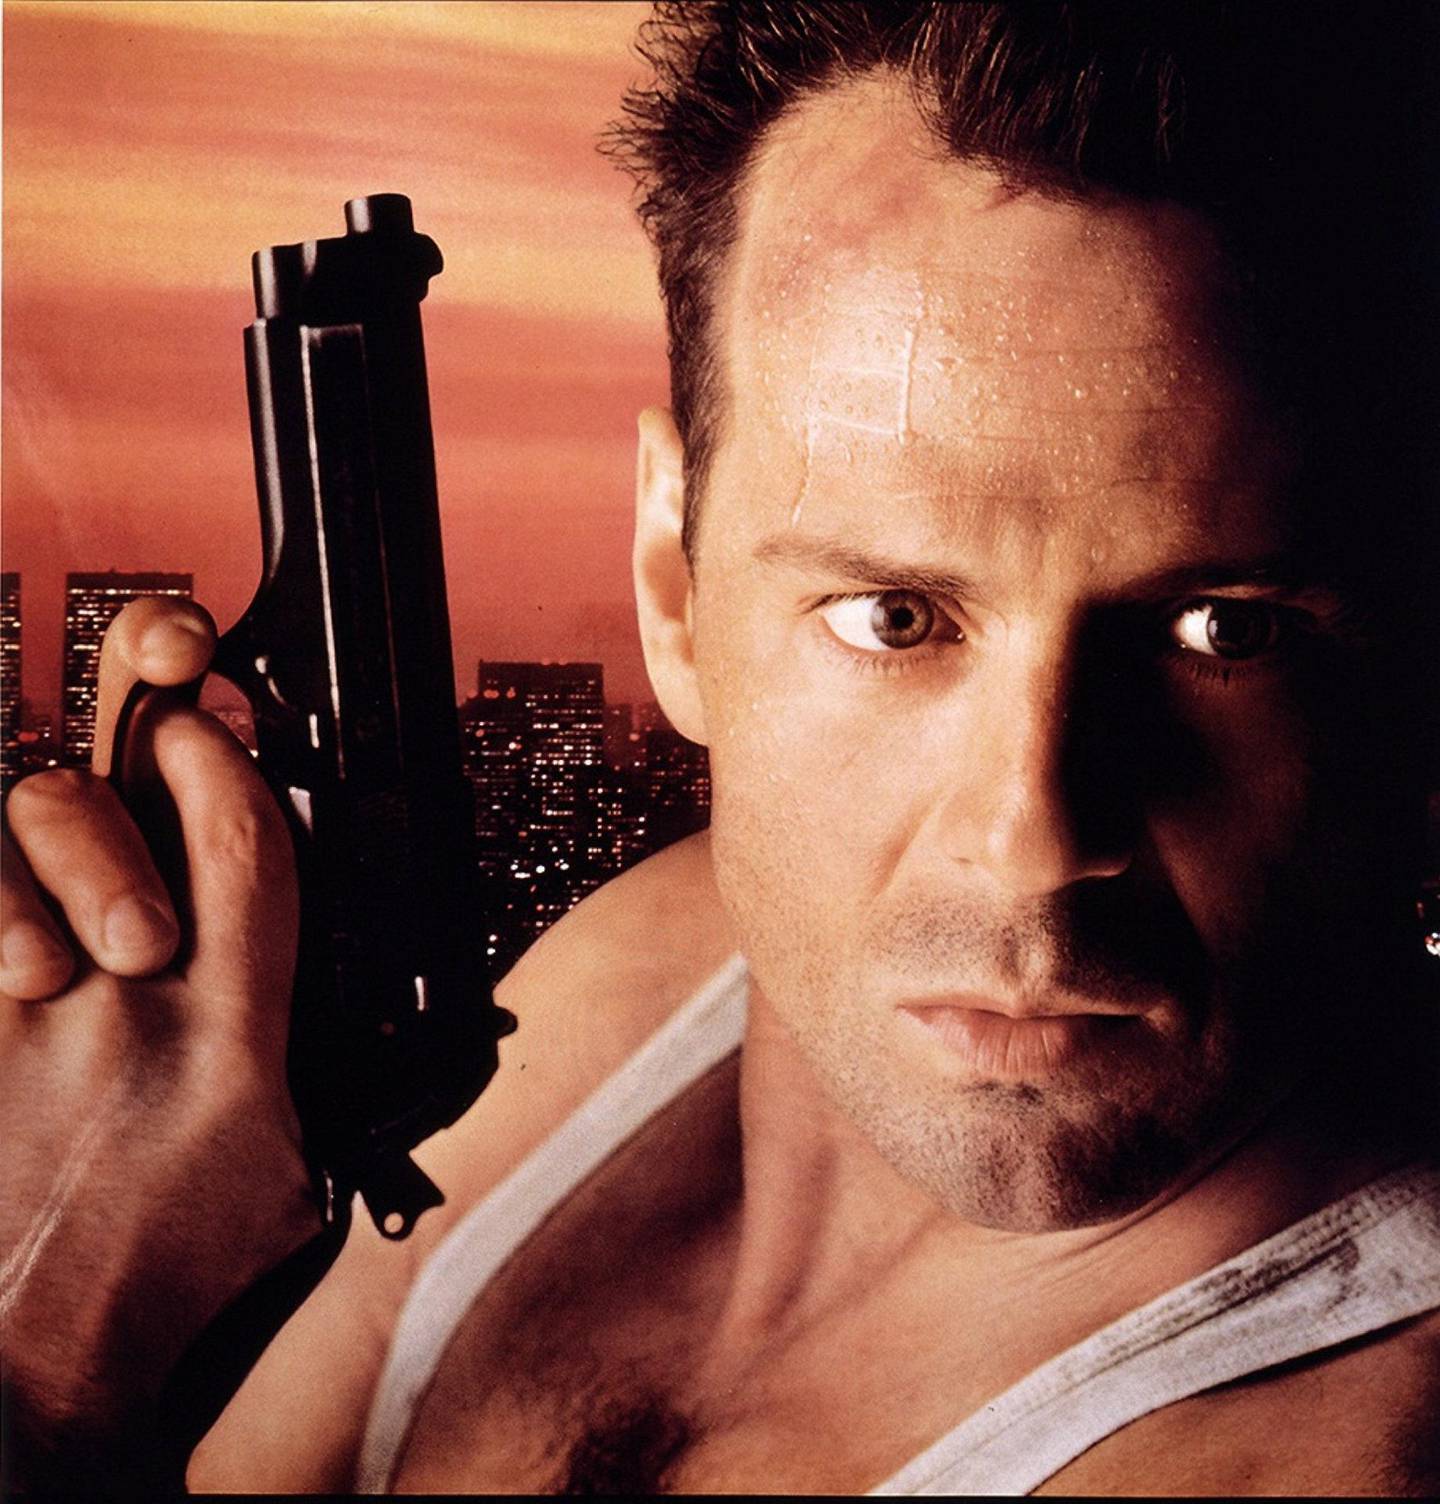 «Die Hard» er den absolutte julefilmen for mange, selv om Bruce Willis selv har påpekt på TV at dette ikke er en julefilm, men en «forbaska Bruce Willis-film». Foto: The Walt Disney Company